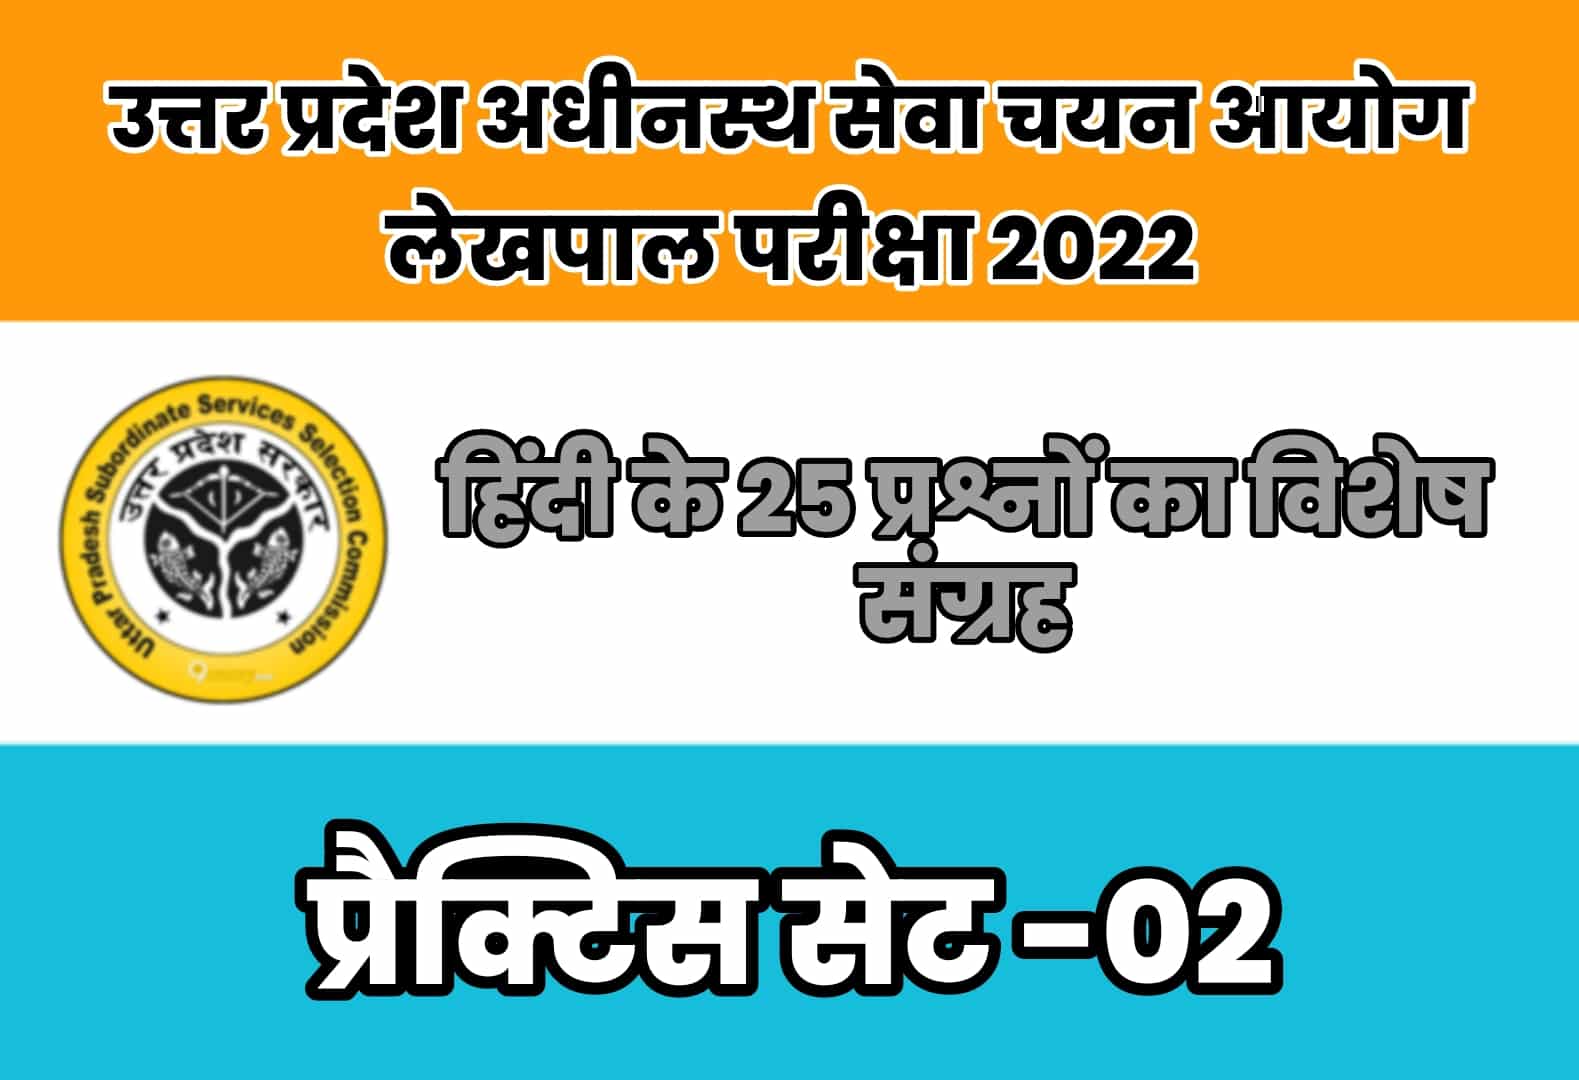 UP Lekhpal Exam 2022 प्रैक्टिस सेट 02 : आगामी लेखपाल परीक्षा में पूछे जा सकते है हिंदी के कुछ ऐसे ही प्रश्न, अवश्य कर लें अध्ययन